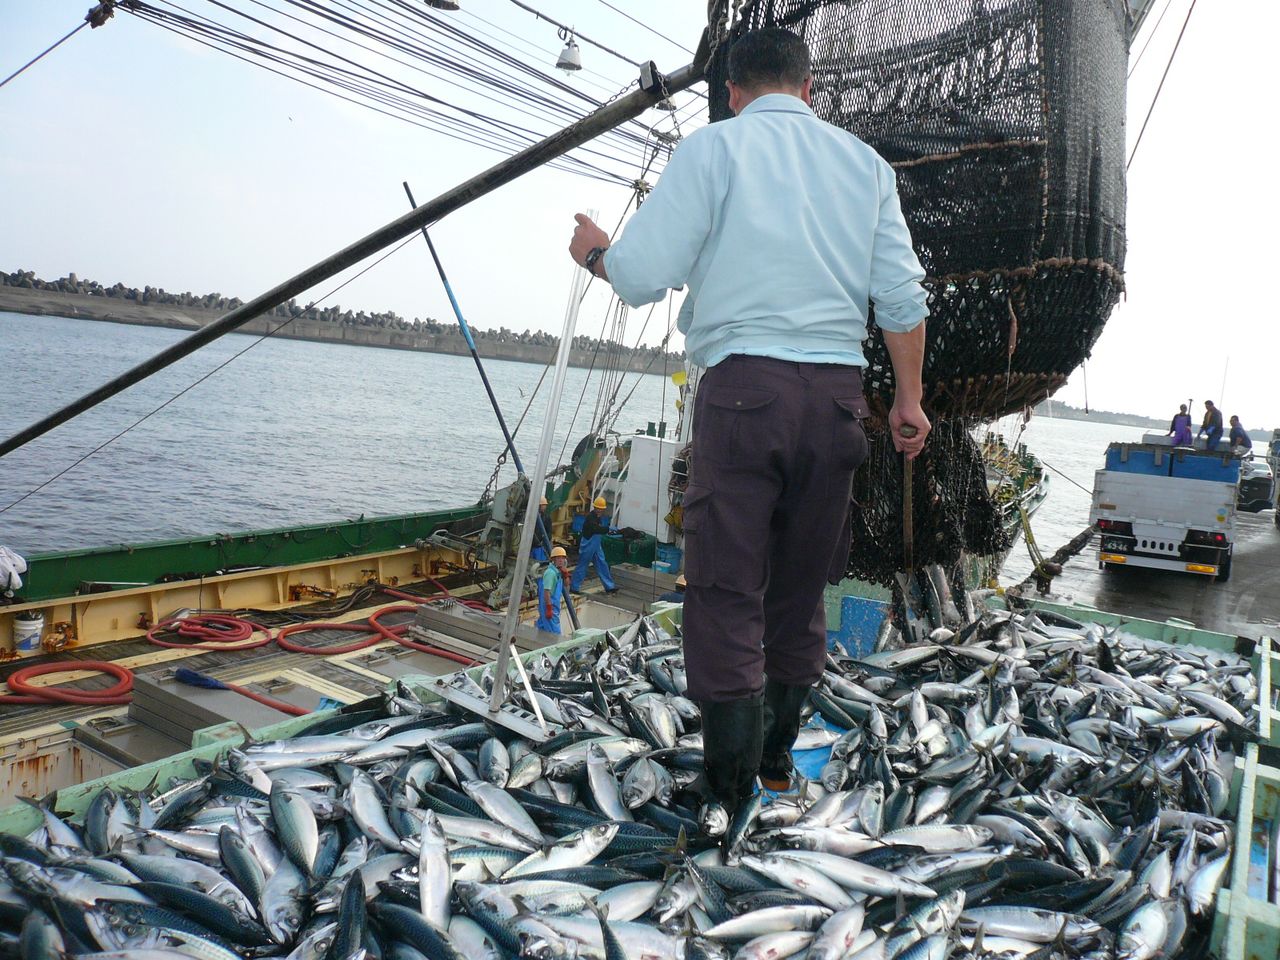  大量青魚（沙丁魚、鯖魚等背部呈青色的海魚——譯註）從圍網漁船卸到貨車的裝貨台中（筆者攝影）